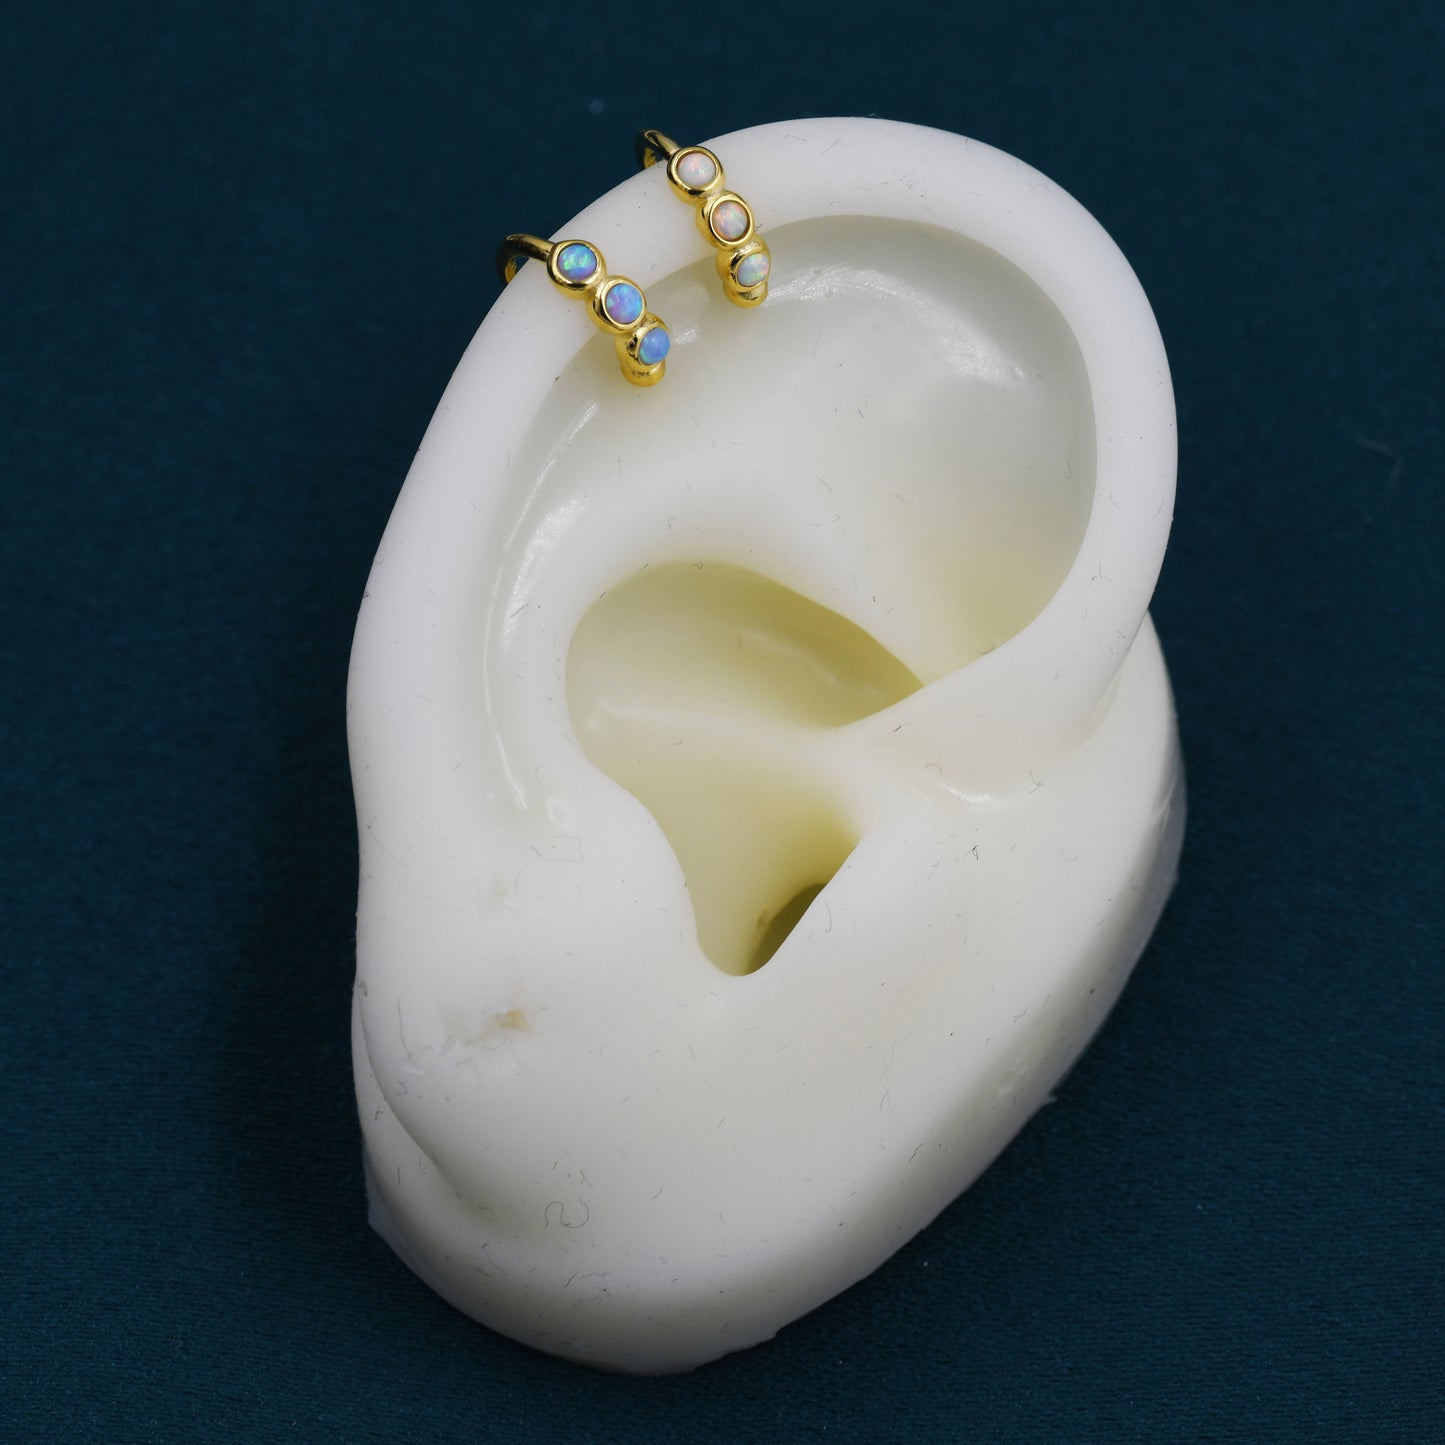 Blue Opal Ear Cuff in Sterling Silver, Silver or Gold, Simple Piercing Free Earrings, Minimalist Ear Cuff, Opal Ear Cuff